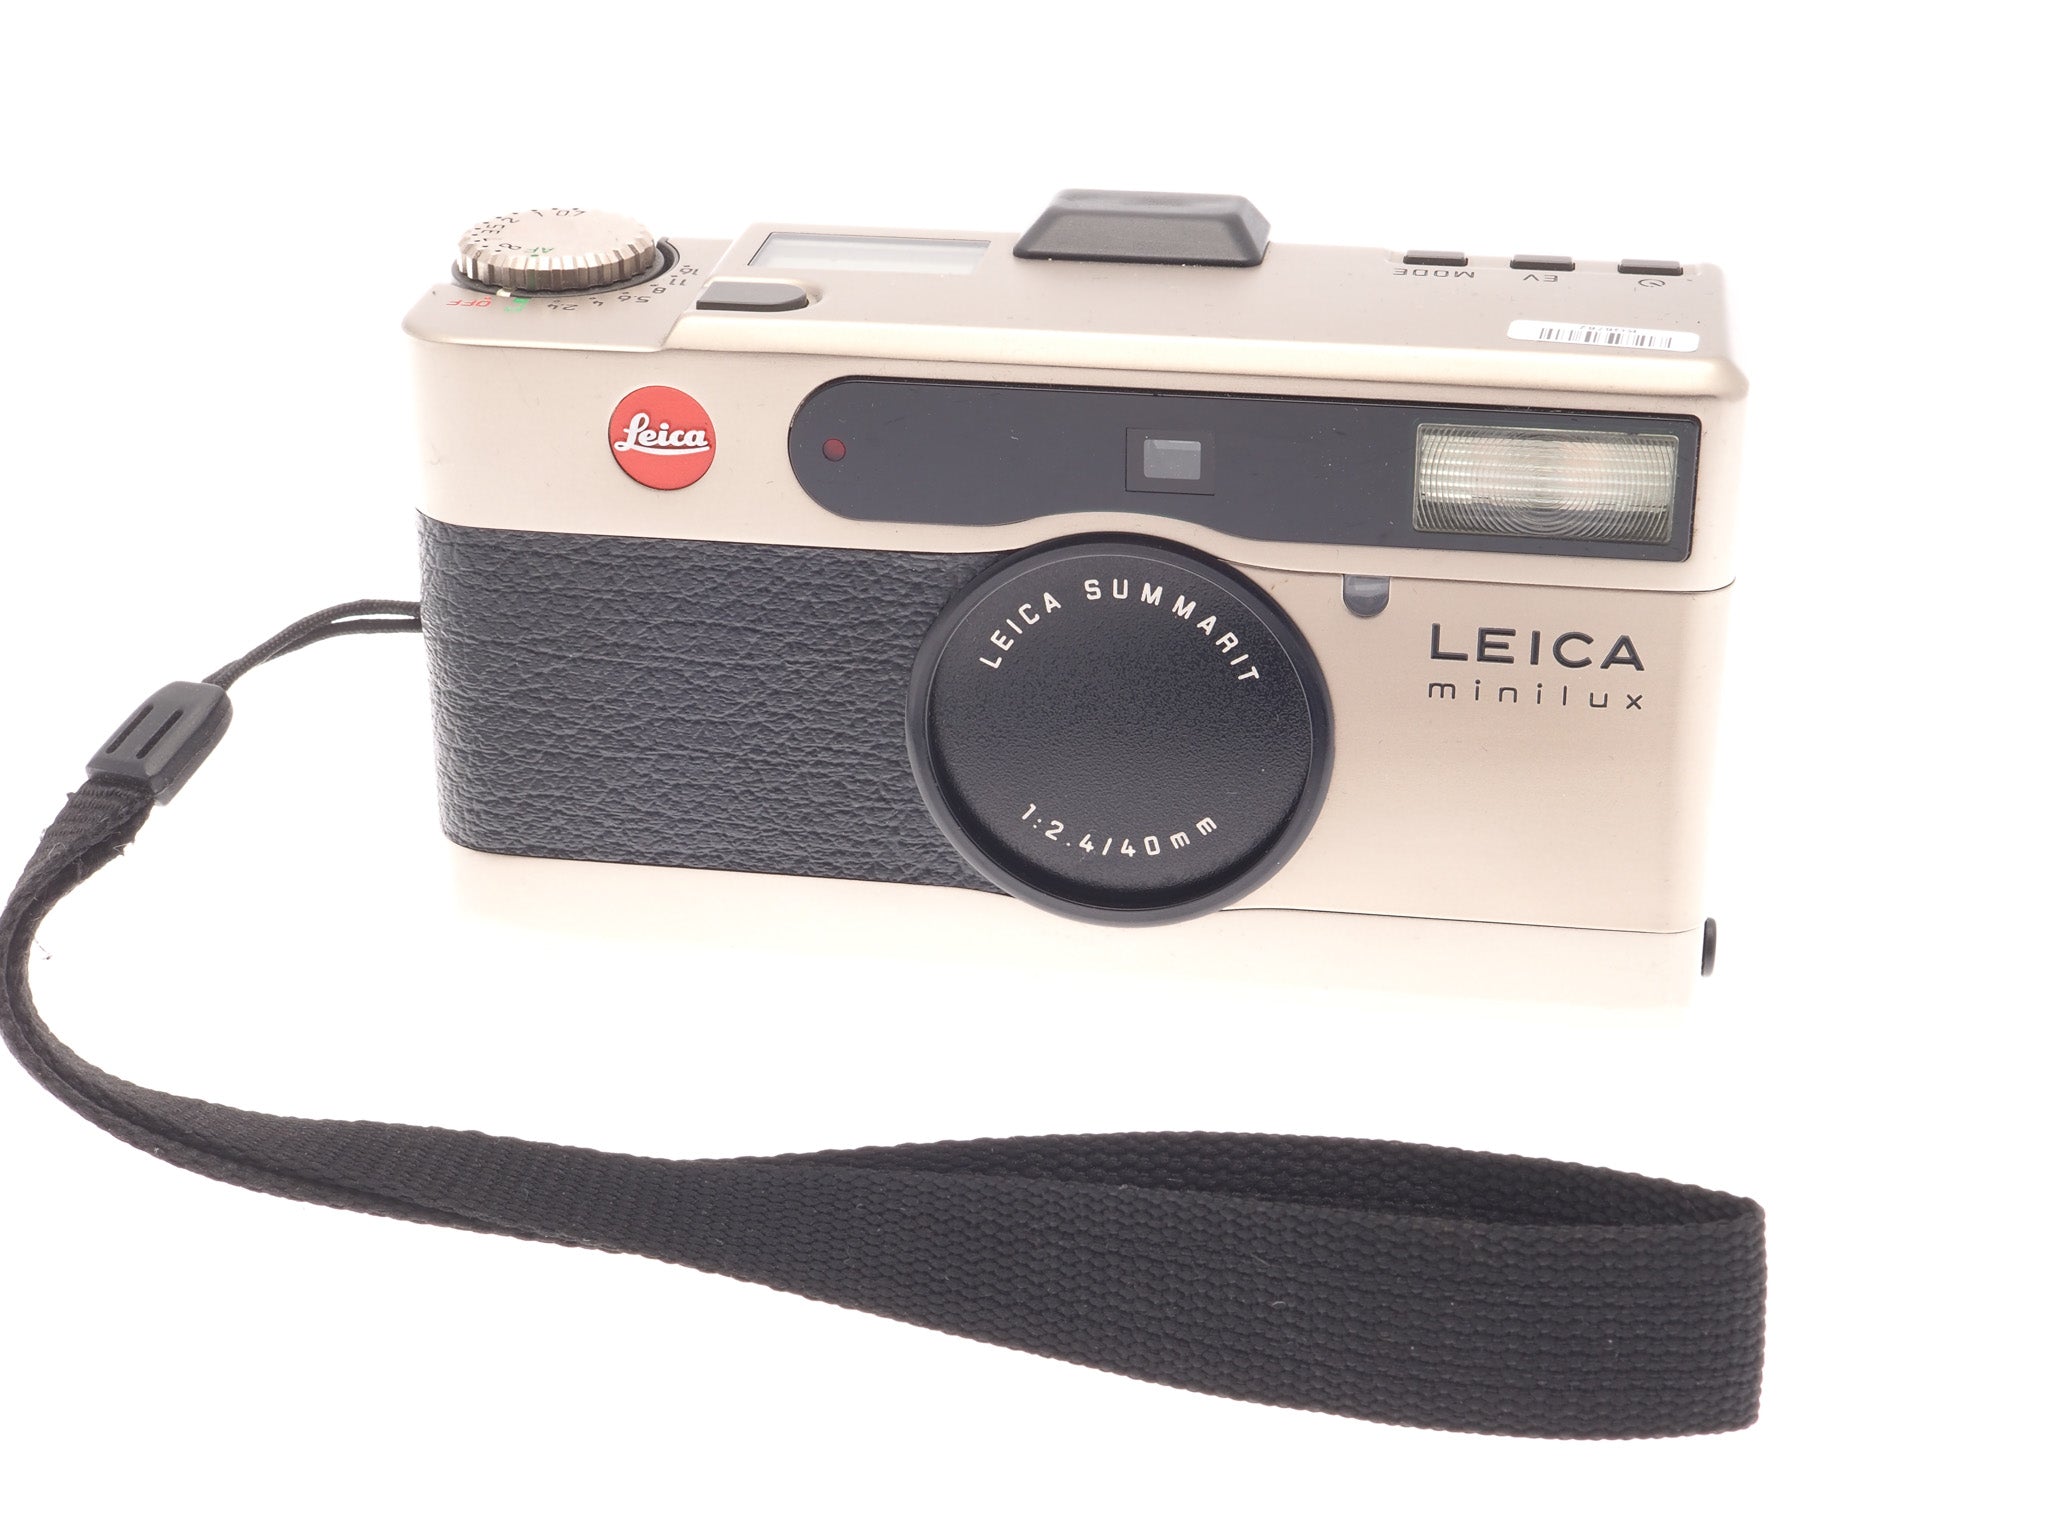 Leica Minilux (18006) - Camera